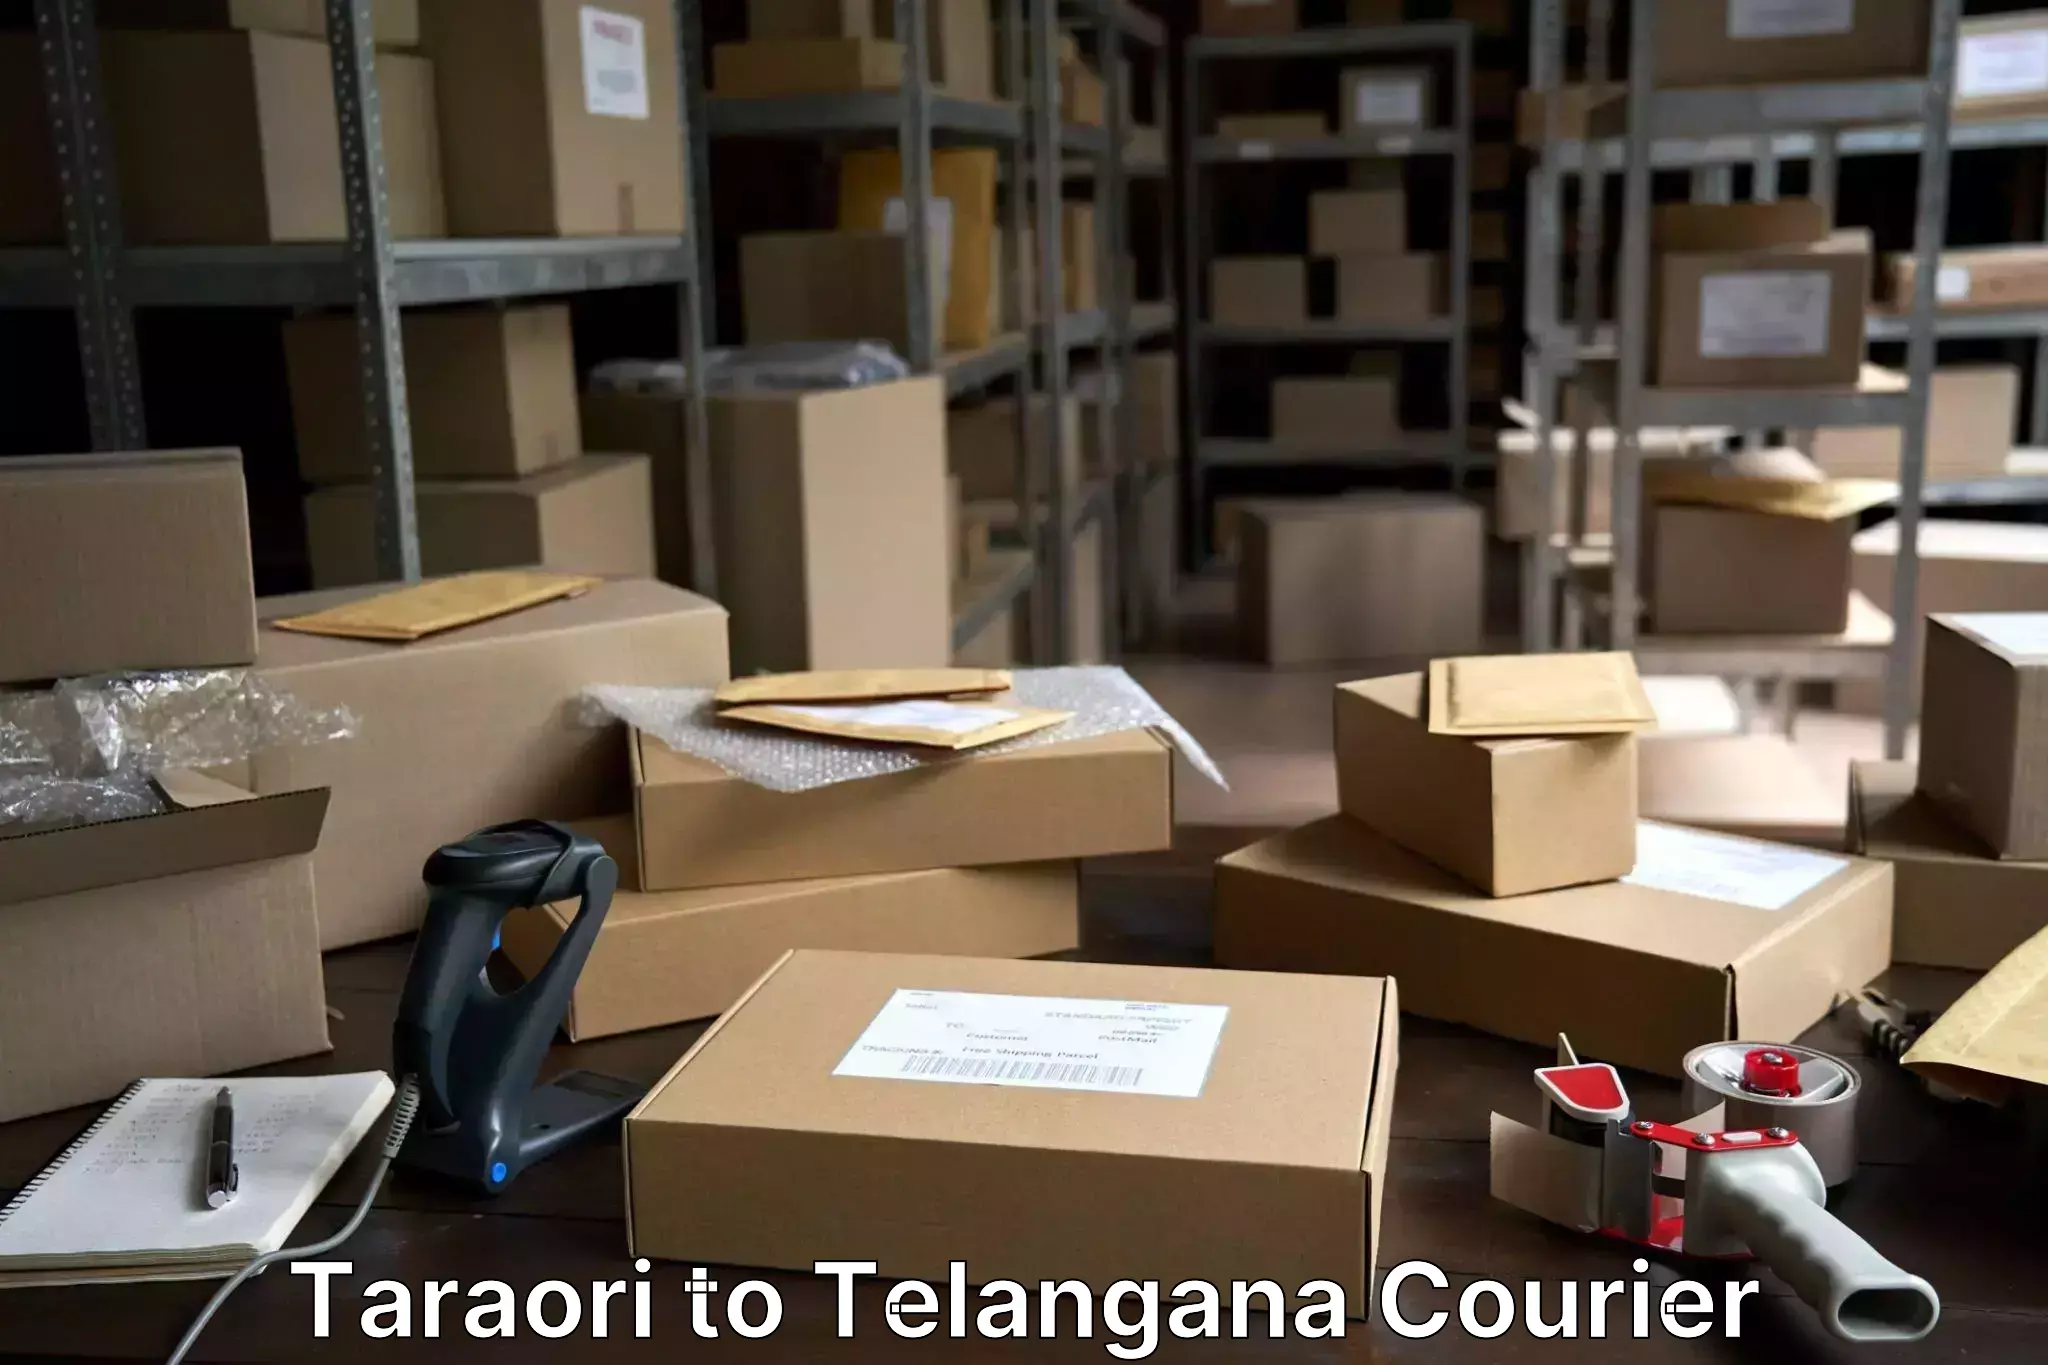 Luggage shipment tracking Taraori to Gollapalli